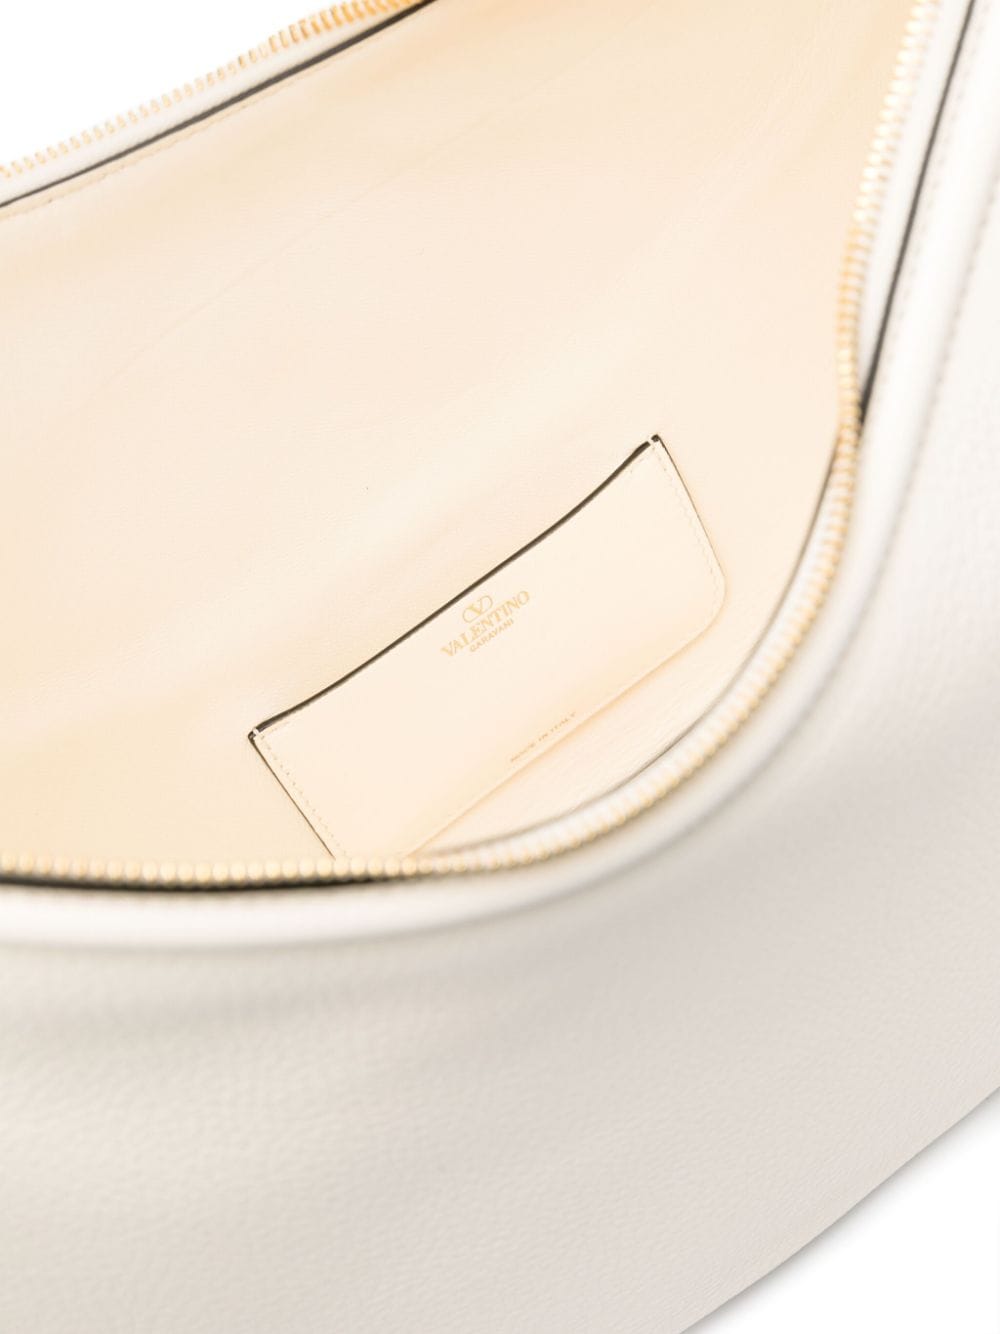 VLogo Signature leather shoulder bag<BR/><BR/>